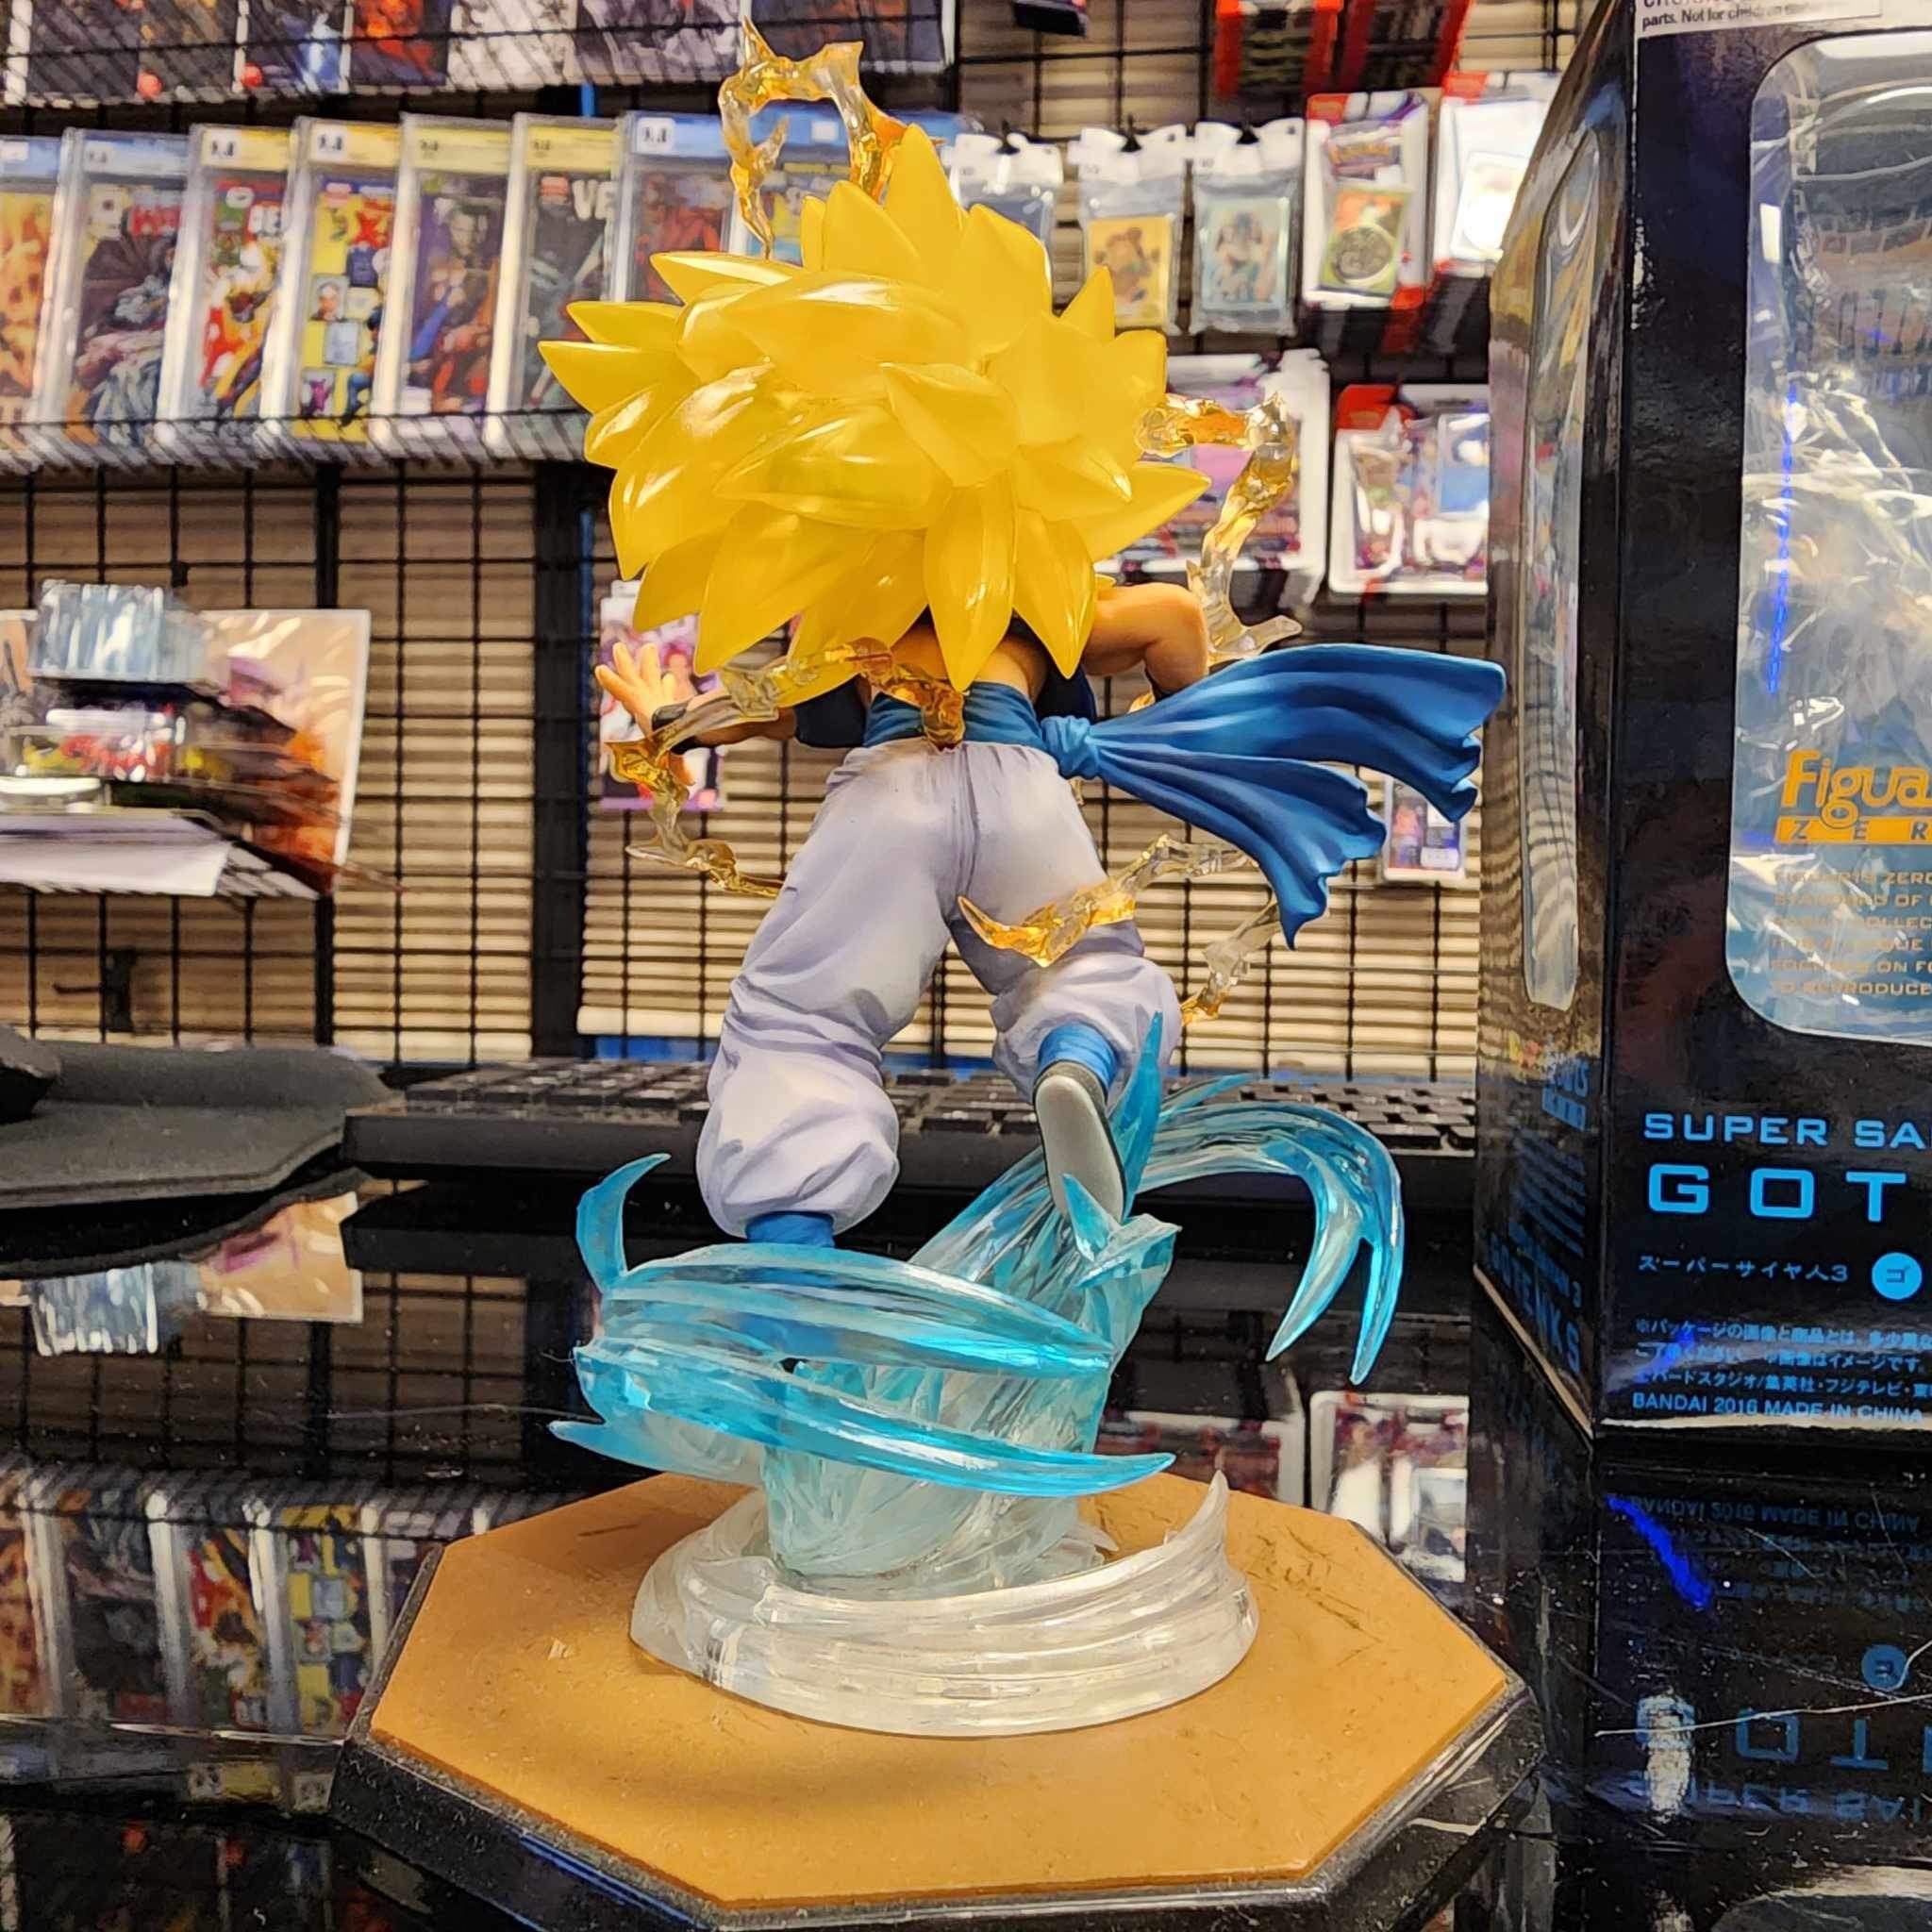 Bandai Dragon Ball Z Super Saiyan 3 Son Goku Figure with display stand, no  box